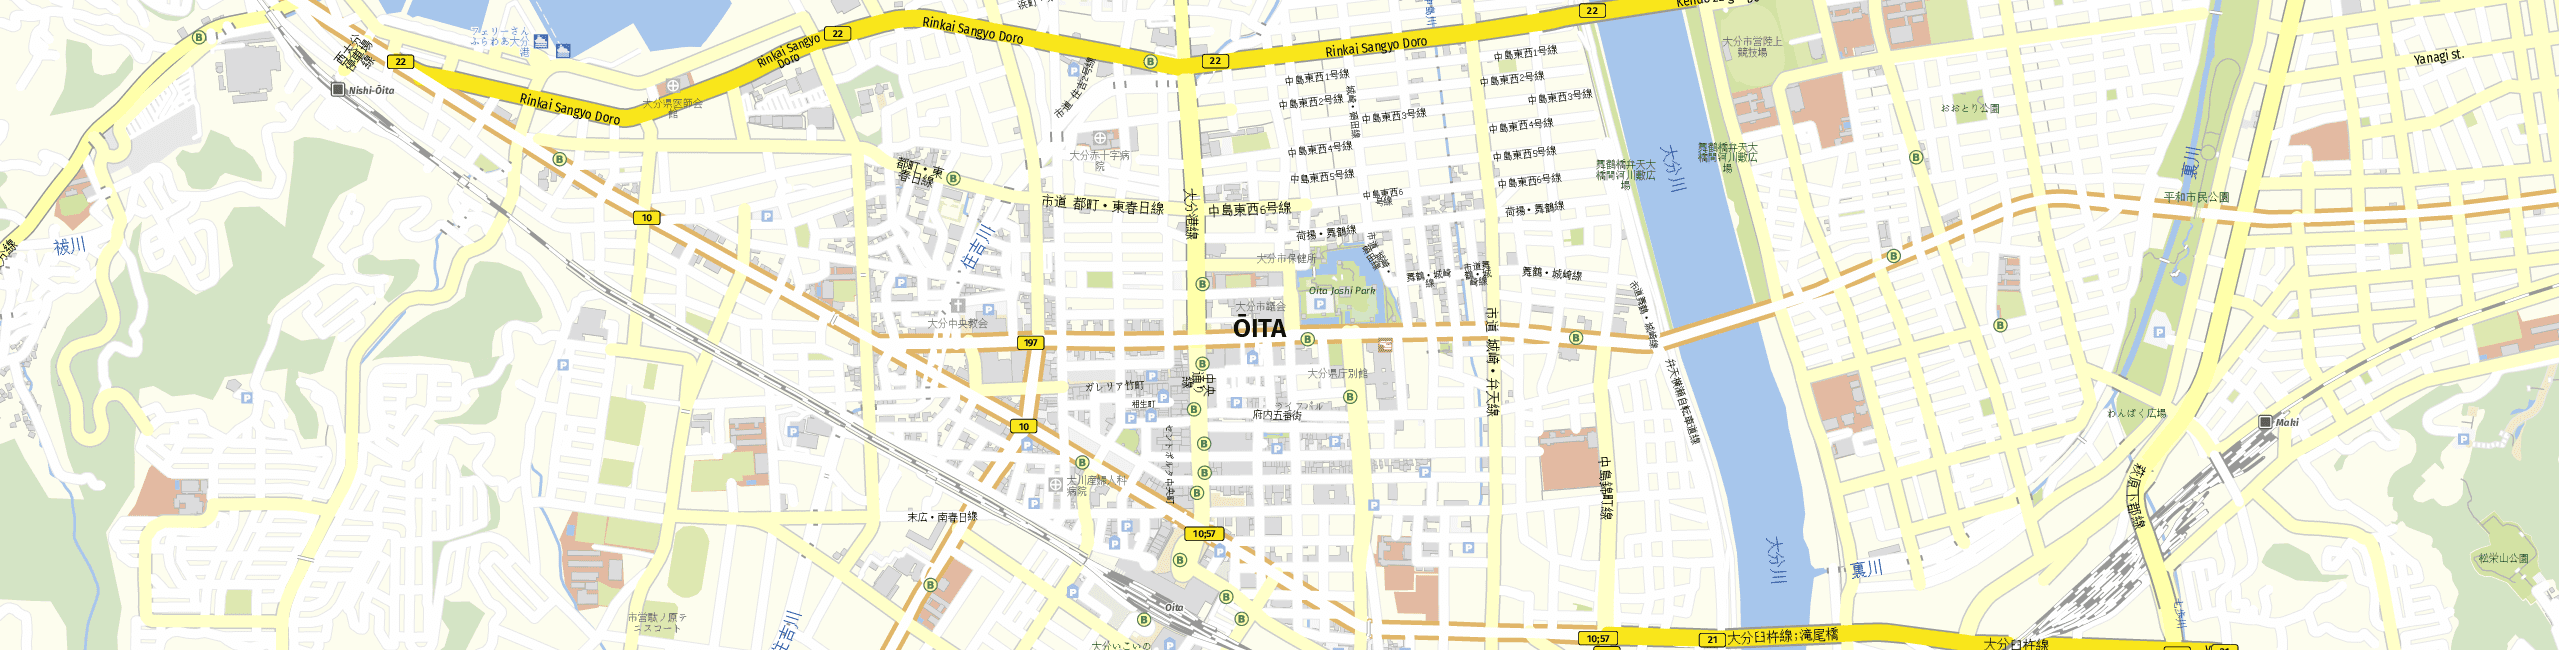 Stadtplan Oita zum Downloaden.